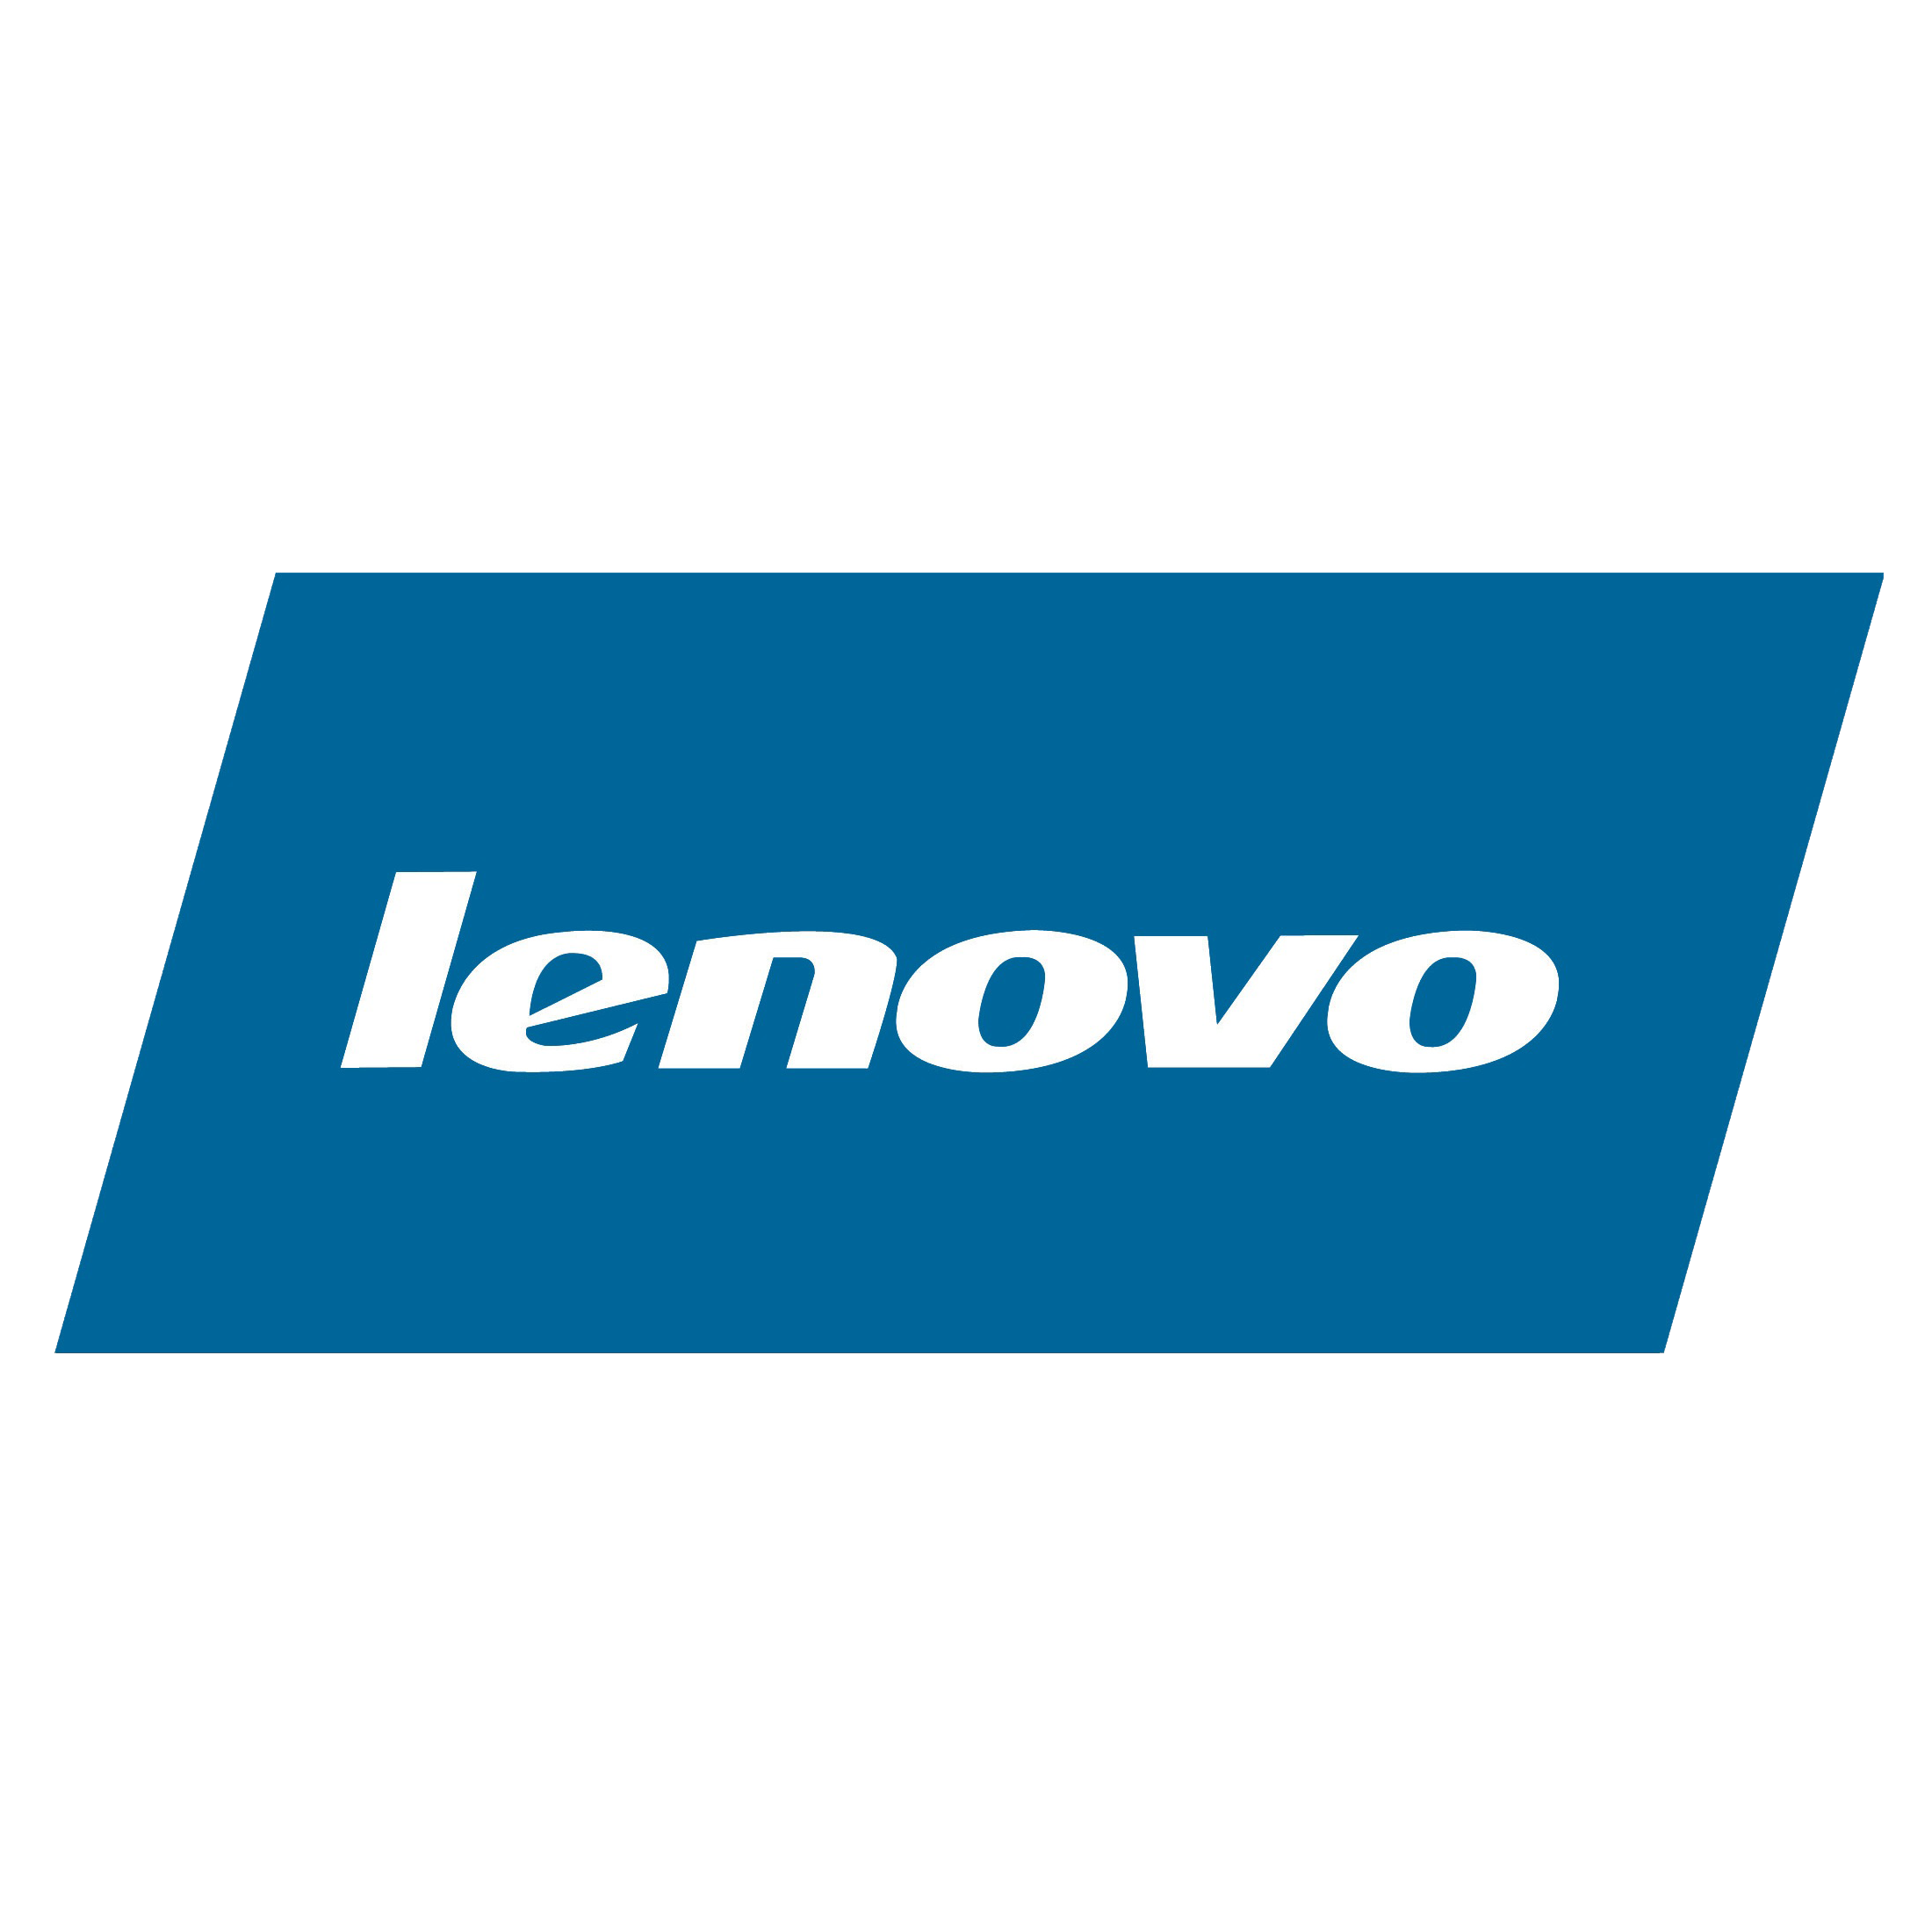 Lenovo Transparent Logo